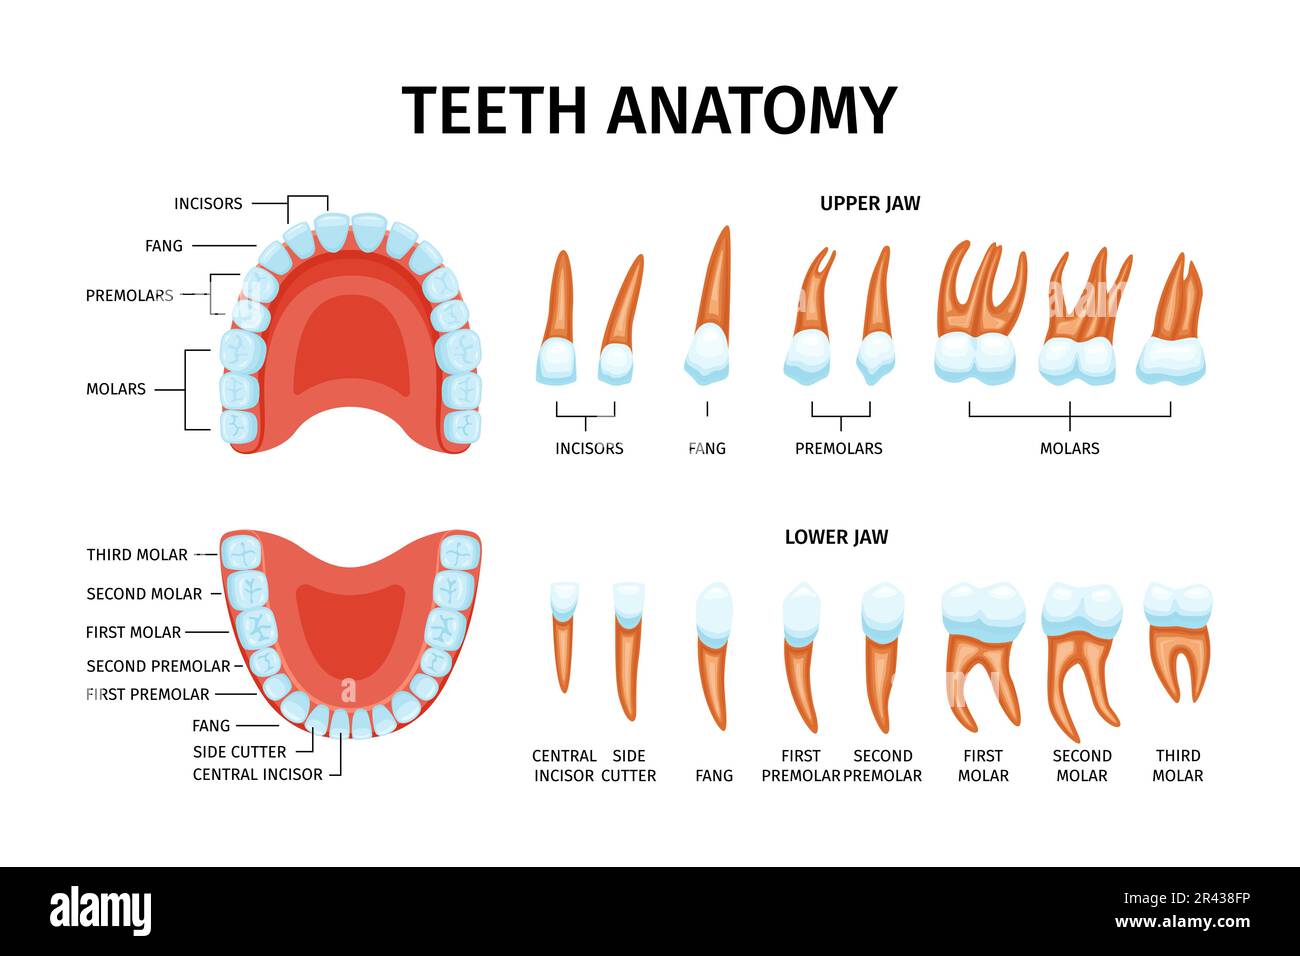 Tableau anatomique des dents adultes ensemble d'images des dents isolées avec mâchoires supérieure et inférieure et illustration vectorielle textuelle Illustration de Vecteur